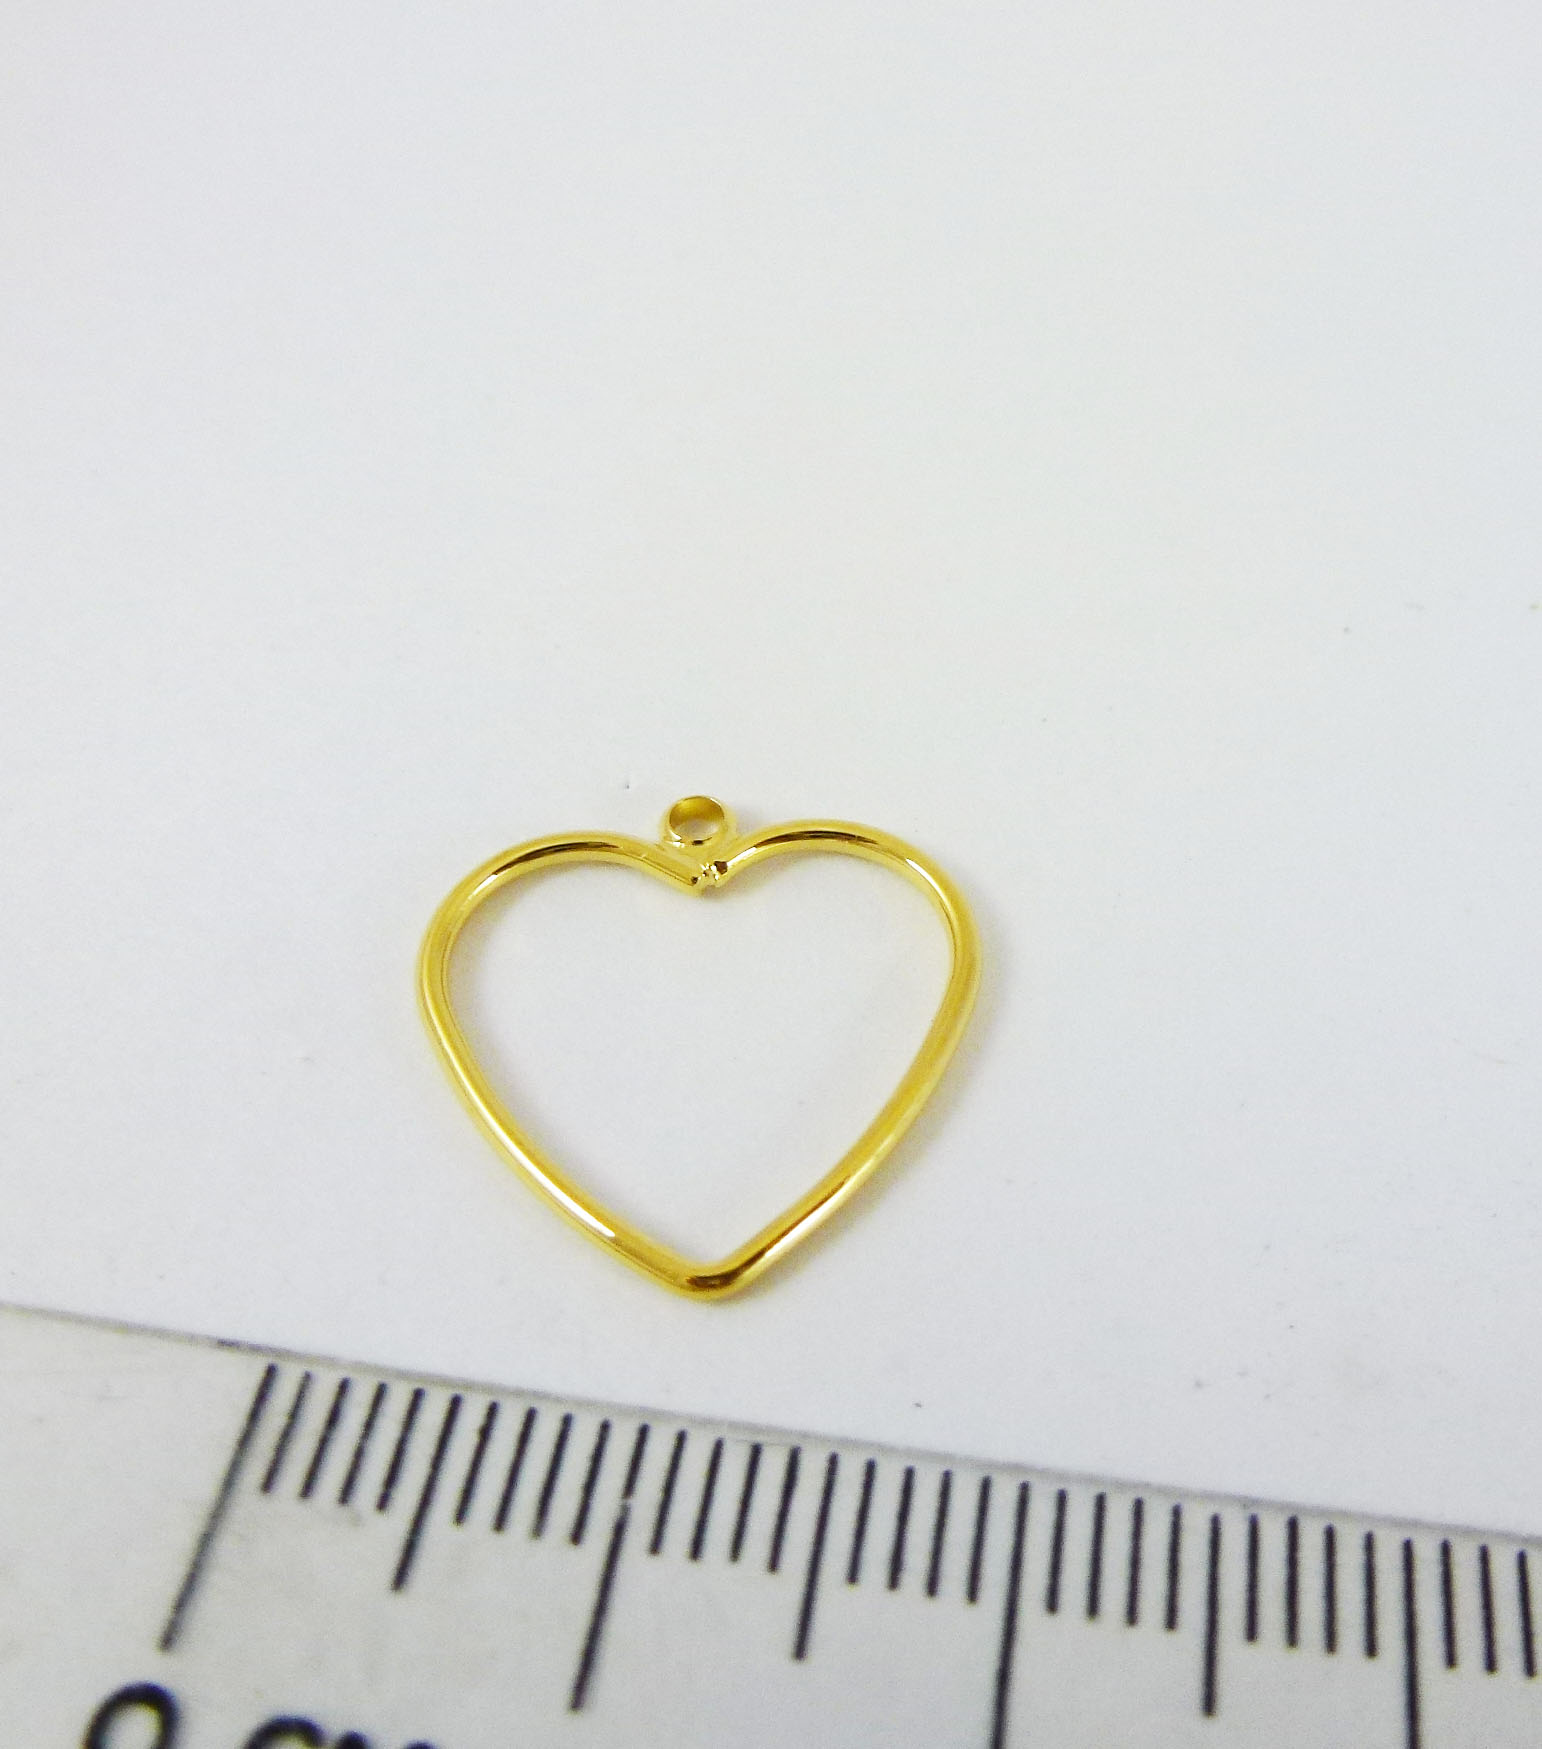 18mm銅鍍金色單孔心形框